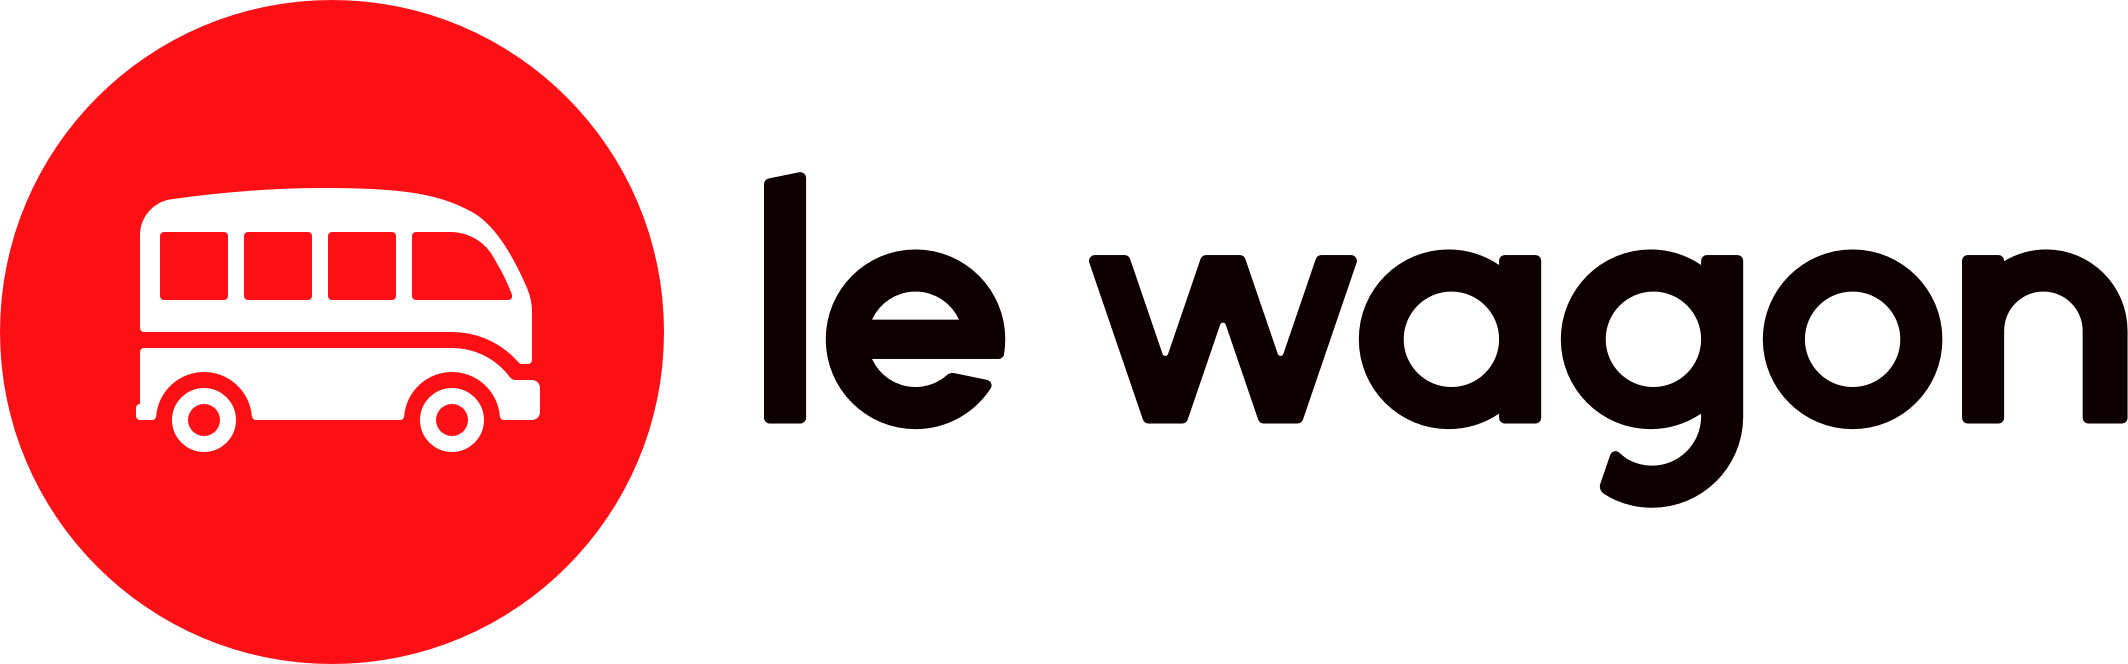 Le wagon owler 20190723 172926 original